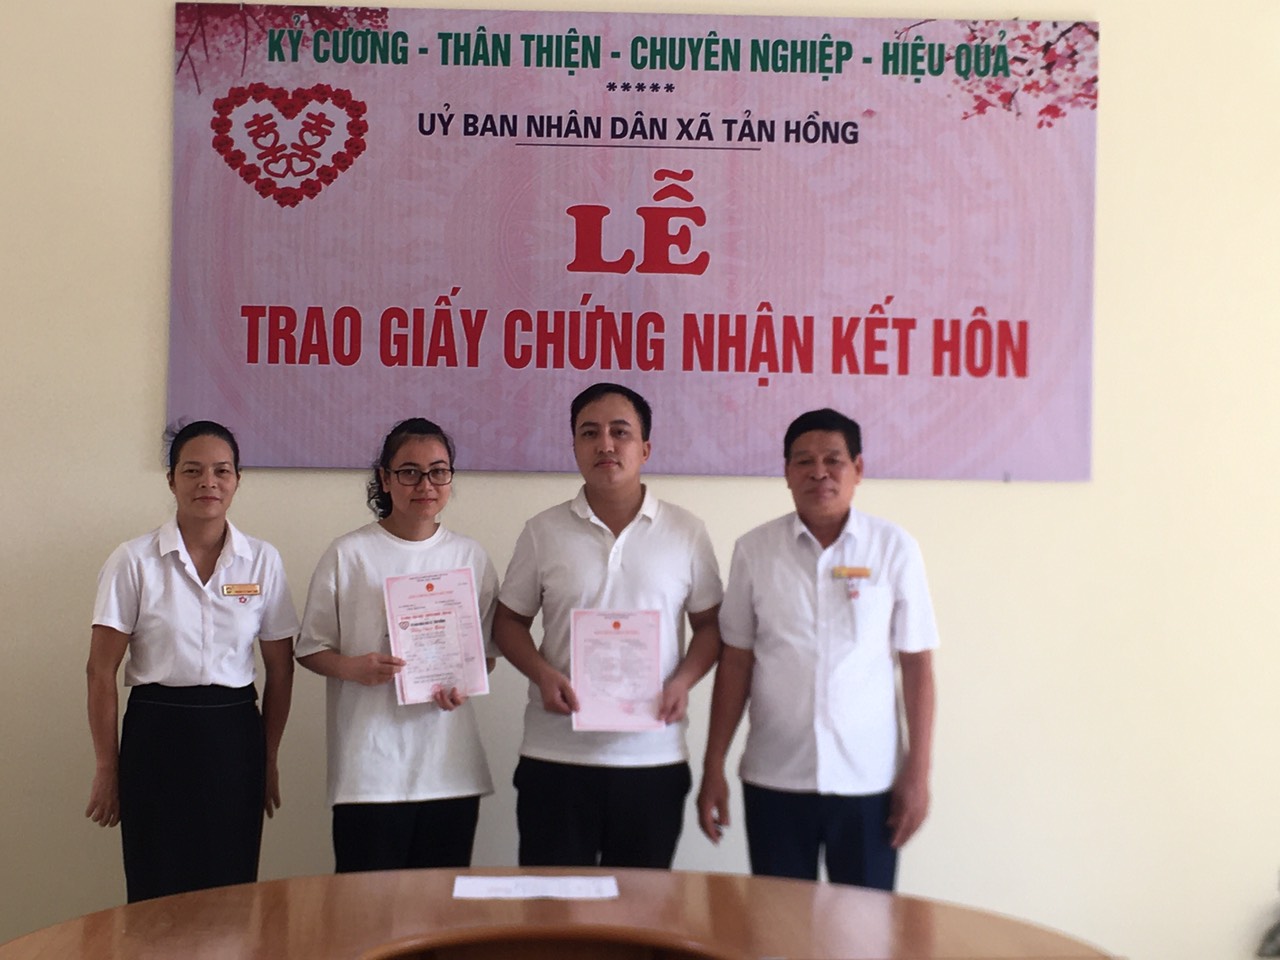 UBND xã Tản Hồng tổ chức trao thiệp chúc mừng cho công dân khi đến đăng ký kết hôn và đăng ký khai sinh.